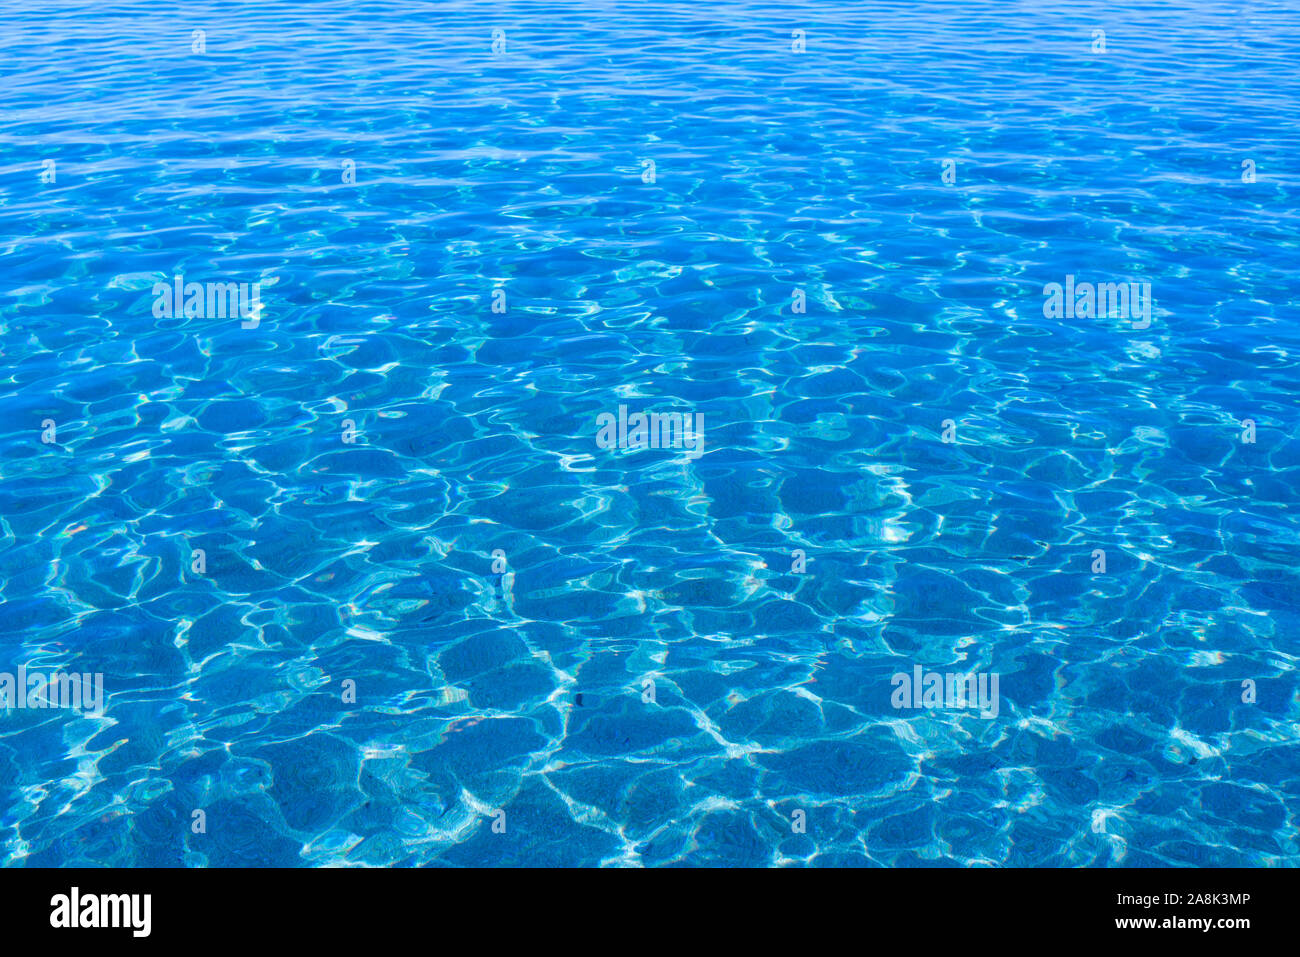 Prístina calma azul con ondulaciones de la superficie del agua de mar Foto de stock